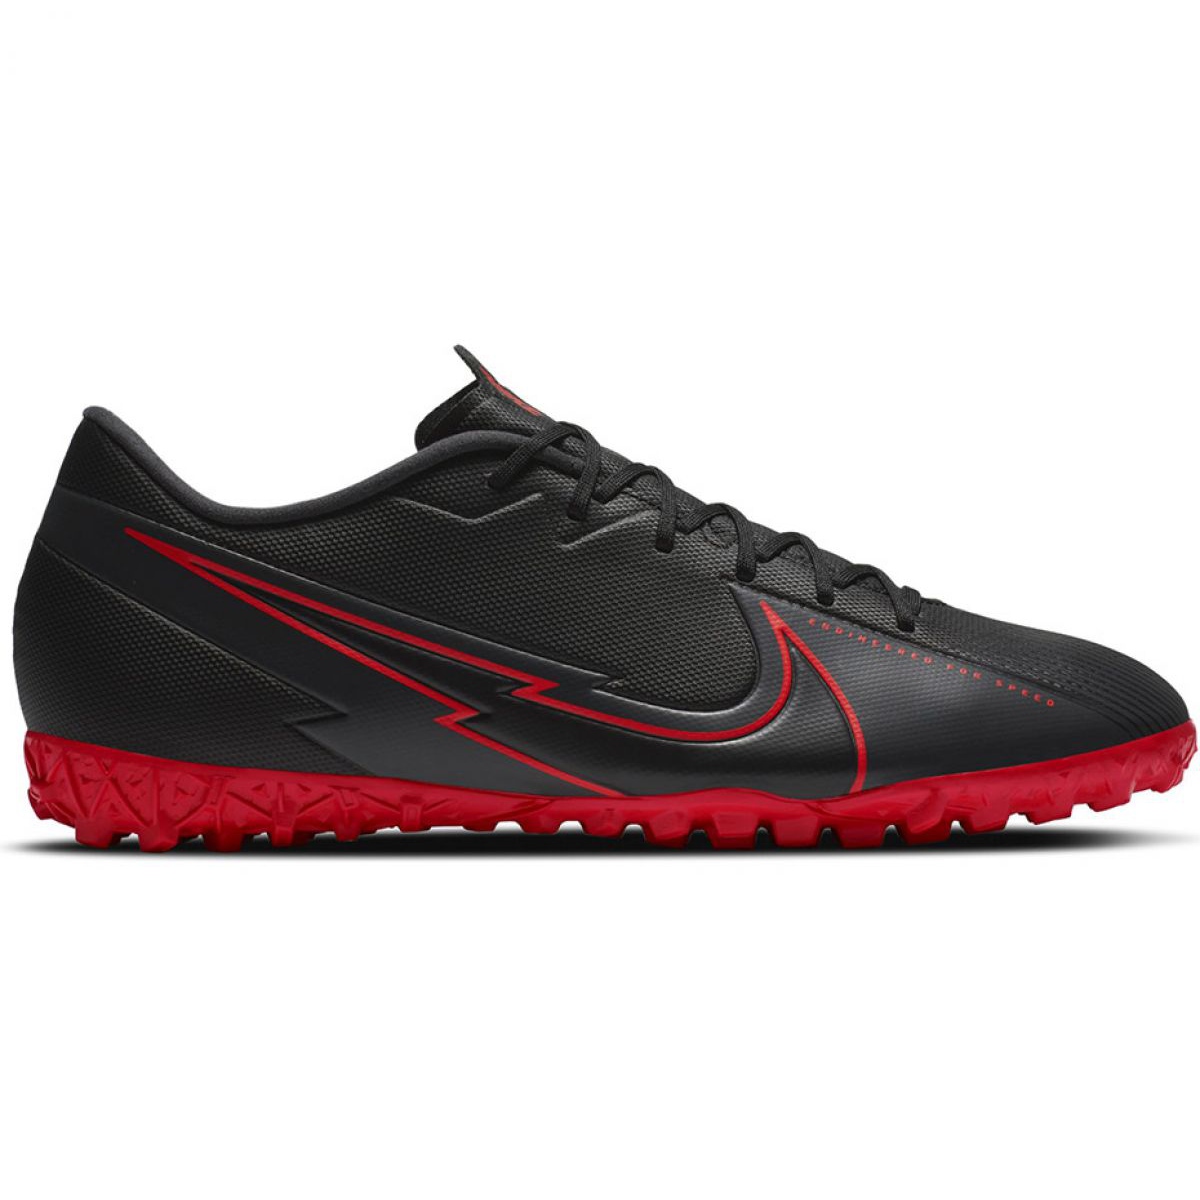 Buty piłkarskie Nike Mercurial Vapor 13 Academy M Tf AT7996 060 czarne